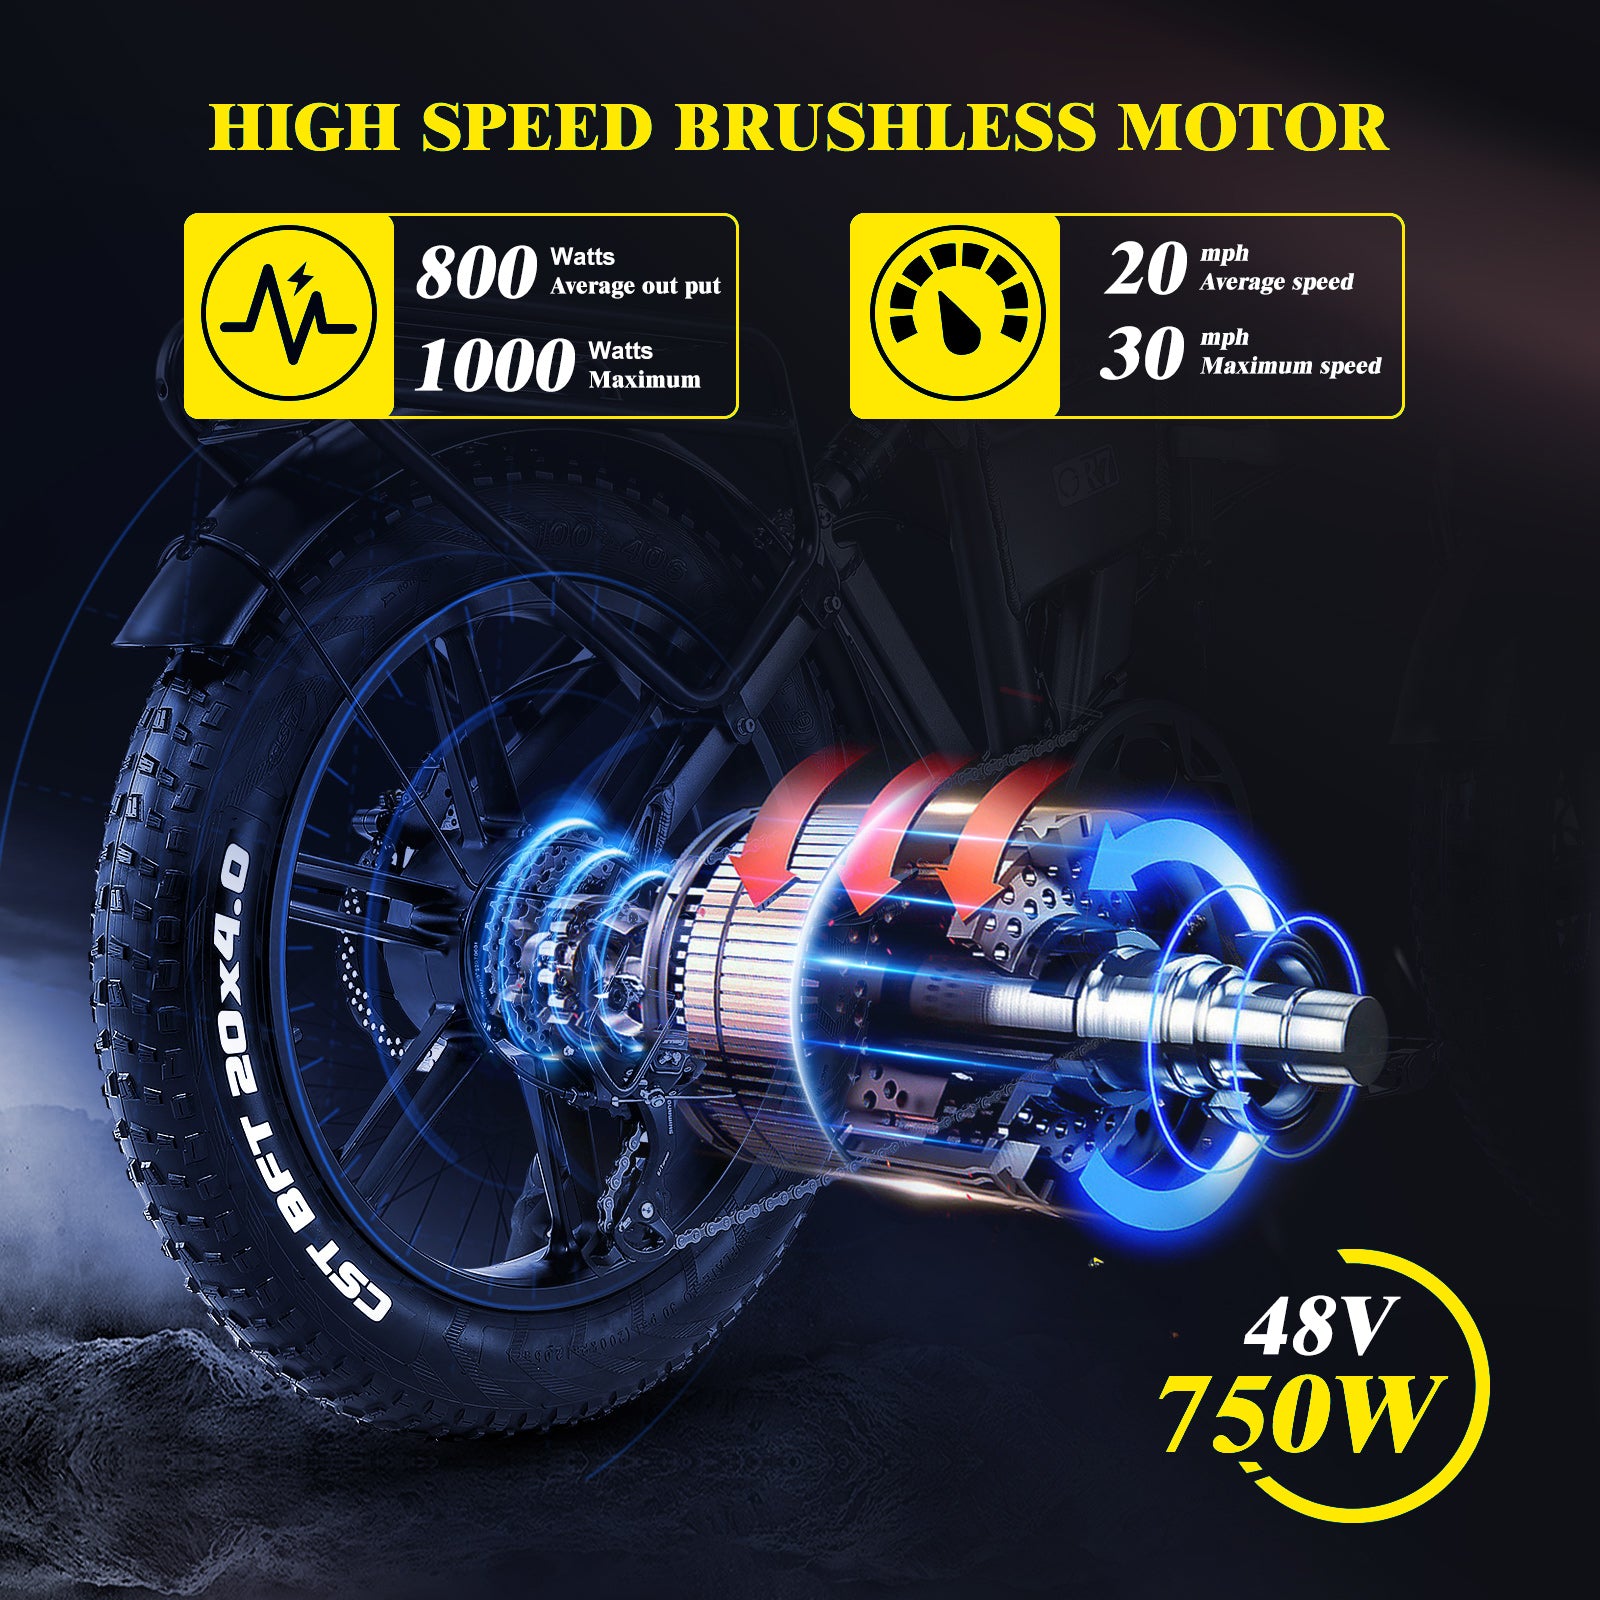 750W (peak 1000W) Brushless Motor